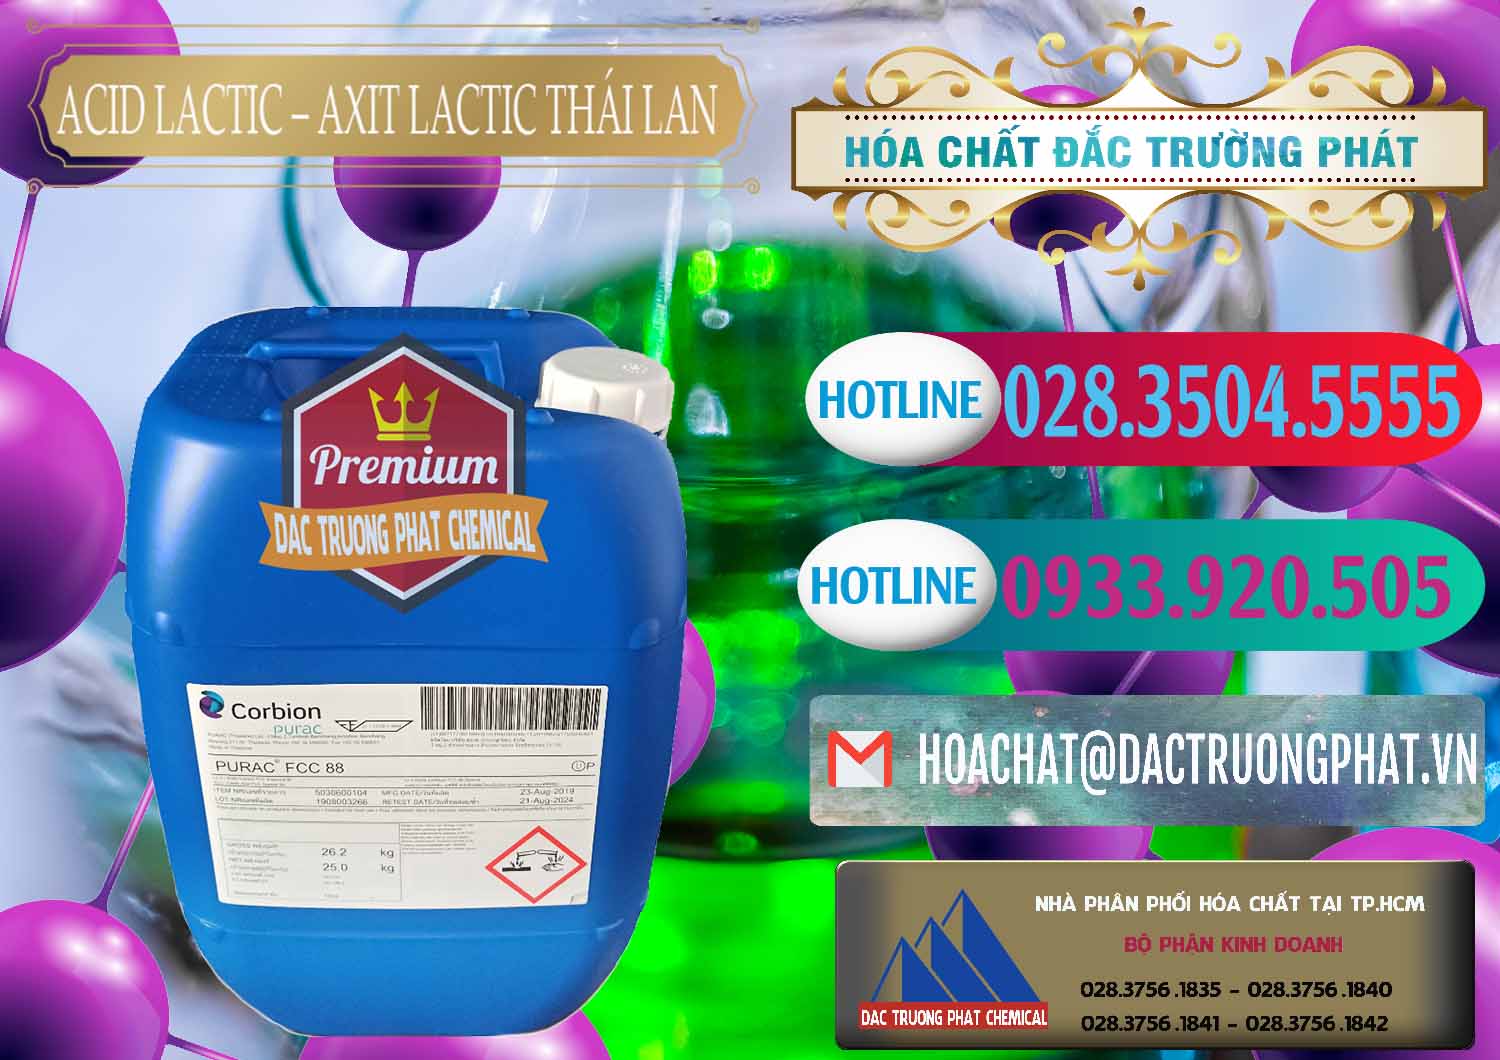 Chuyên cung cấp và bán Acid Lactic – Axit Lactic Thái Lan Purac FCC 88 - 0012 - Cty chuyên cung ứng & phân phối hóa chất tại TP.HCM - truongphat.vn